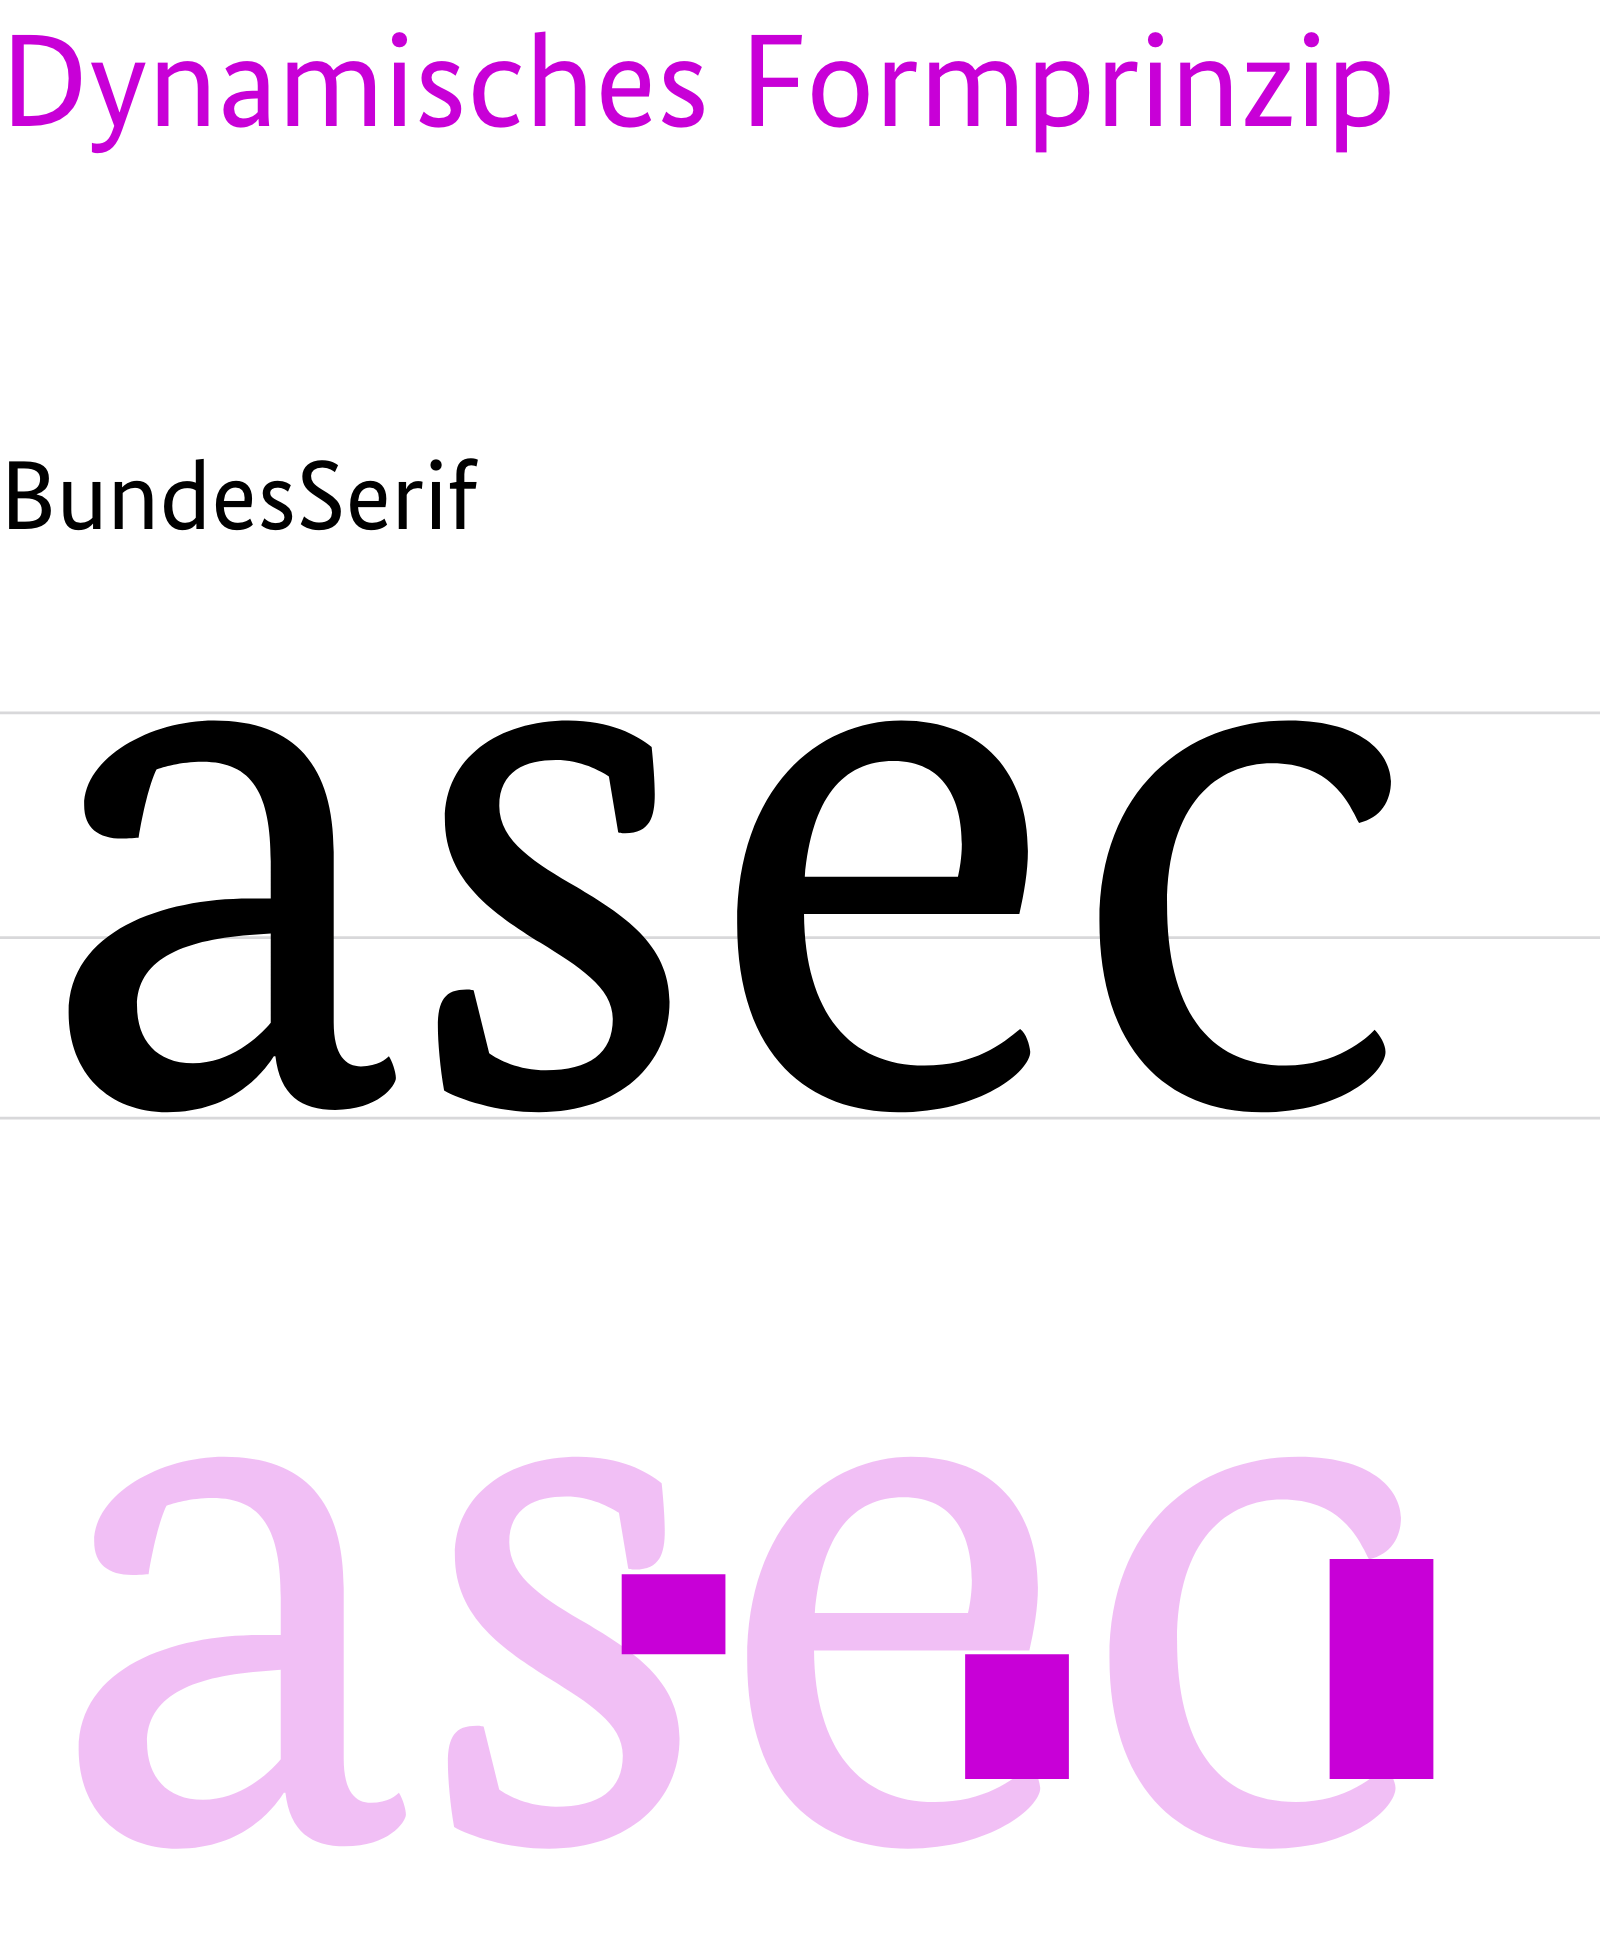 Merkmale des dynamischen Formprinzip am Beispiel der Bundes Serif. Markierung der Buchstabenbereiche, die offen sind am Beispiel der Buchstaben a,s,e,c.